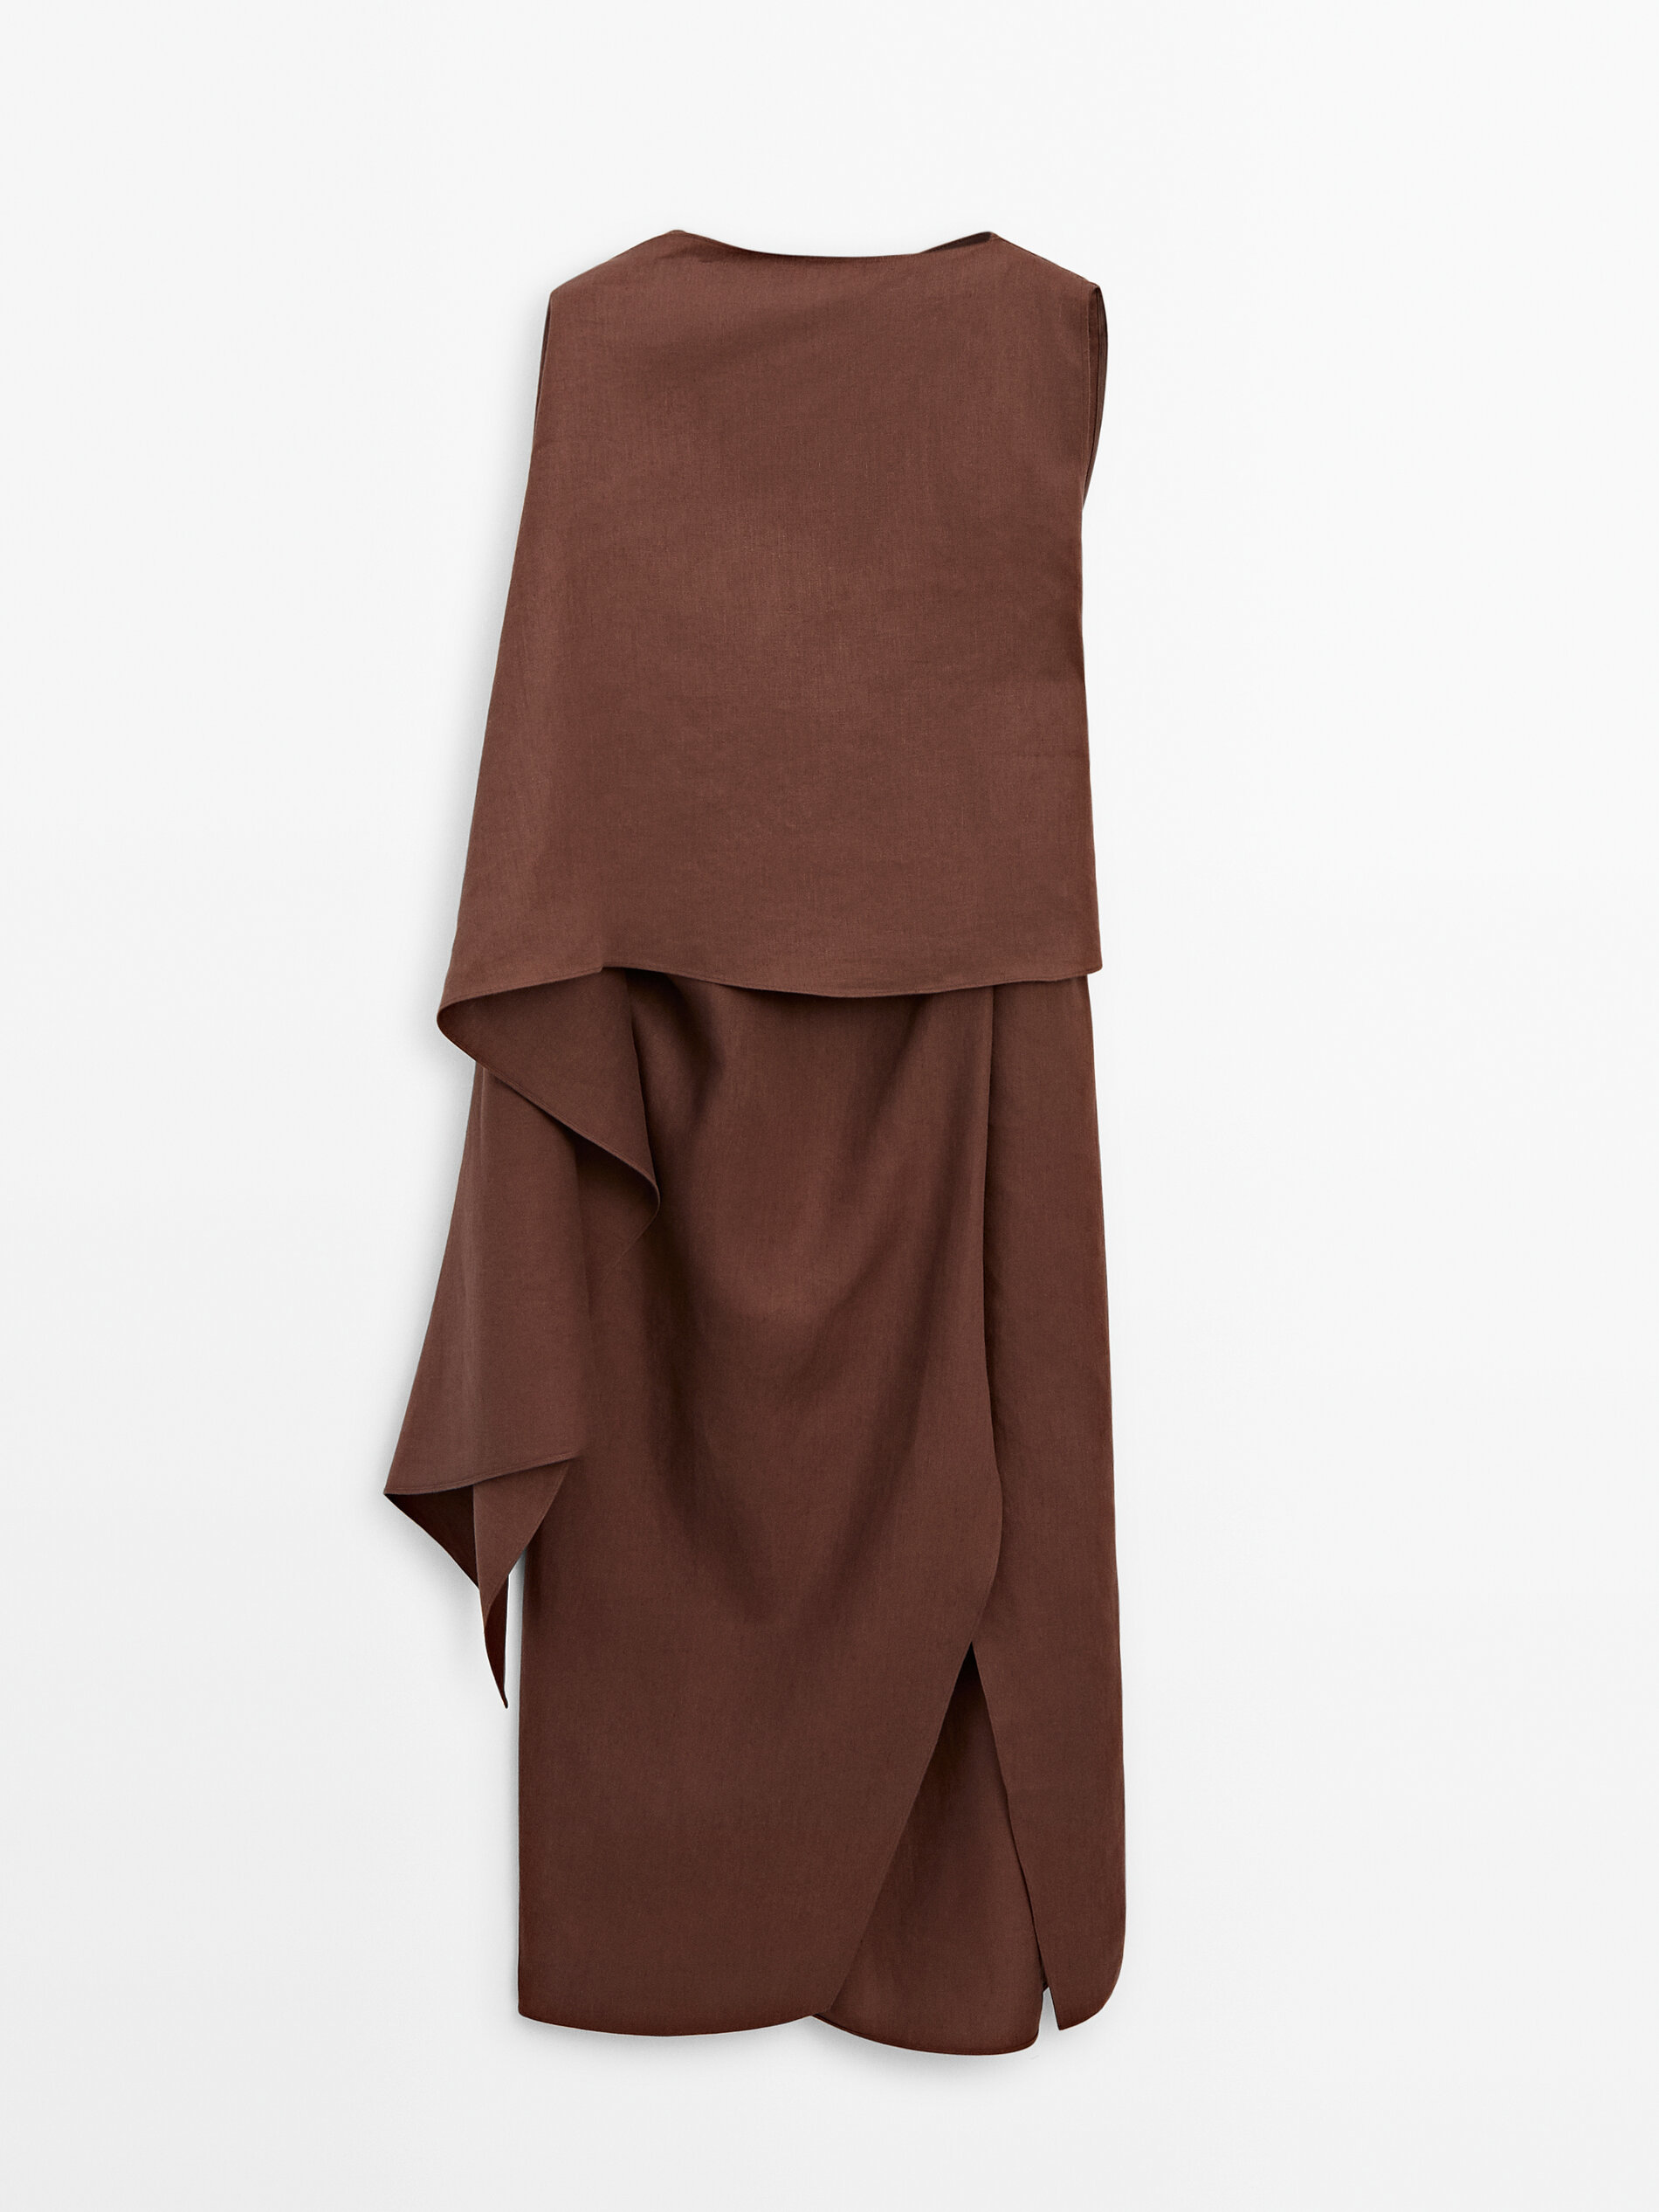 Renueva tu armario con el vestido largo capa de Massimo Dutti que te har sentir fabulosa a los 60 aos